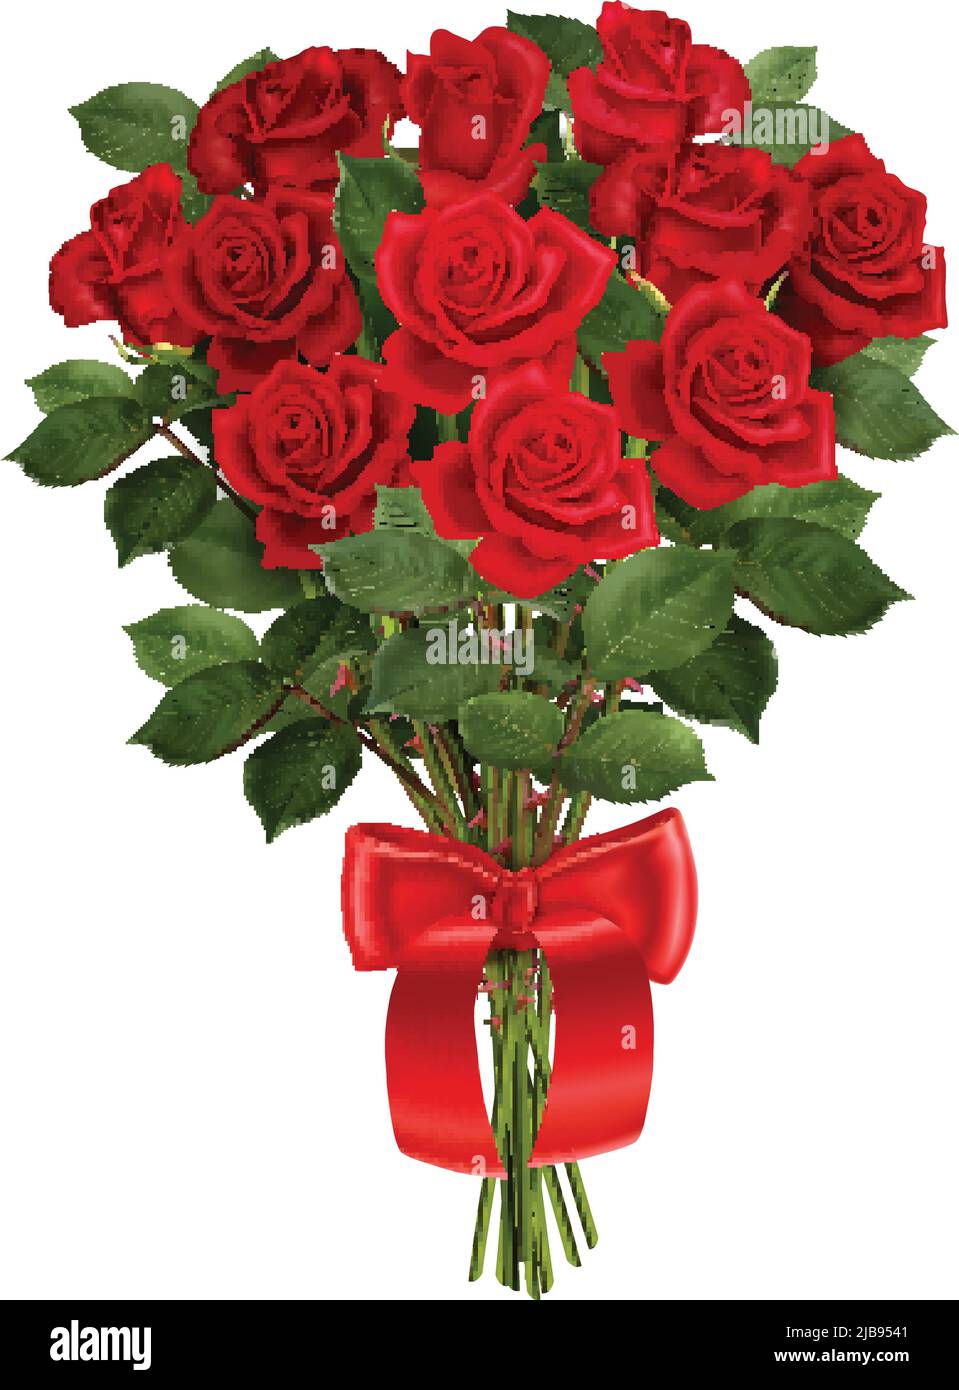 Bund von roten Rosen mit Band realistische Zusammensetzung auf weißem Hintergrund Vektor-Illustration Stock Vektor